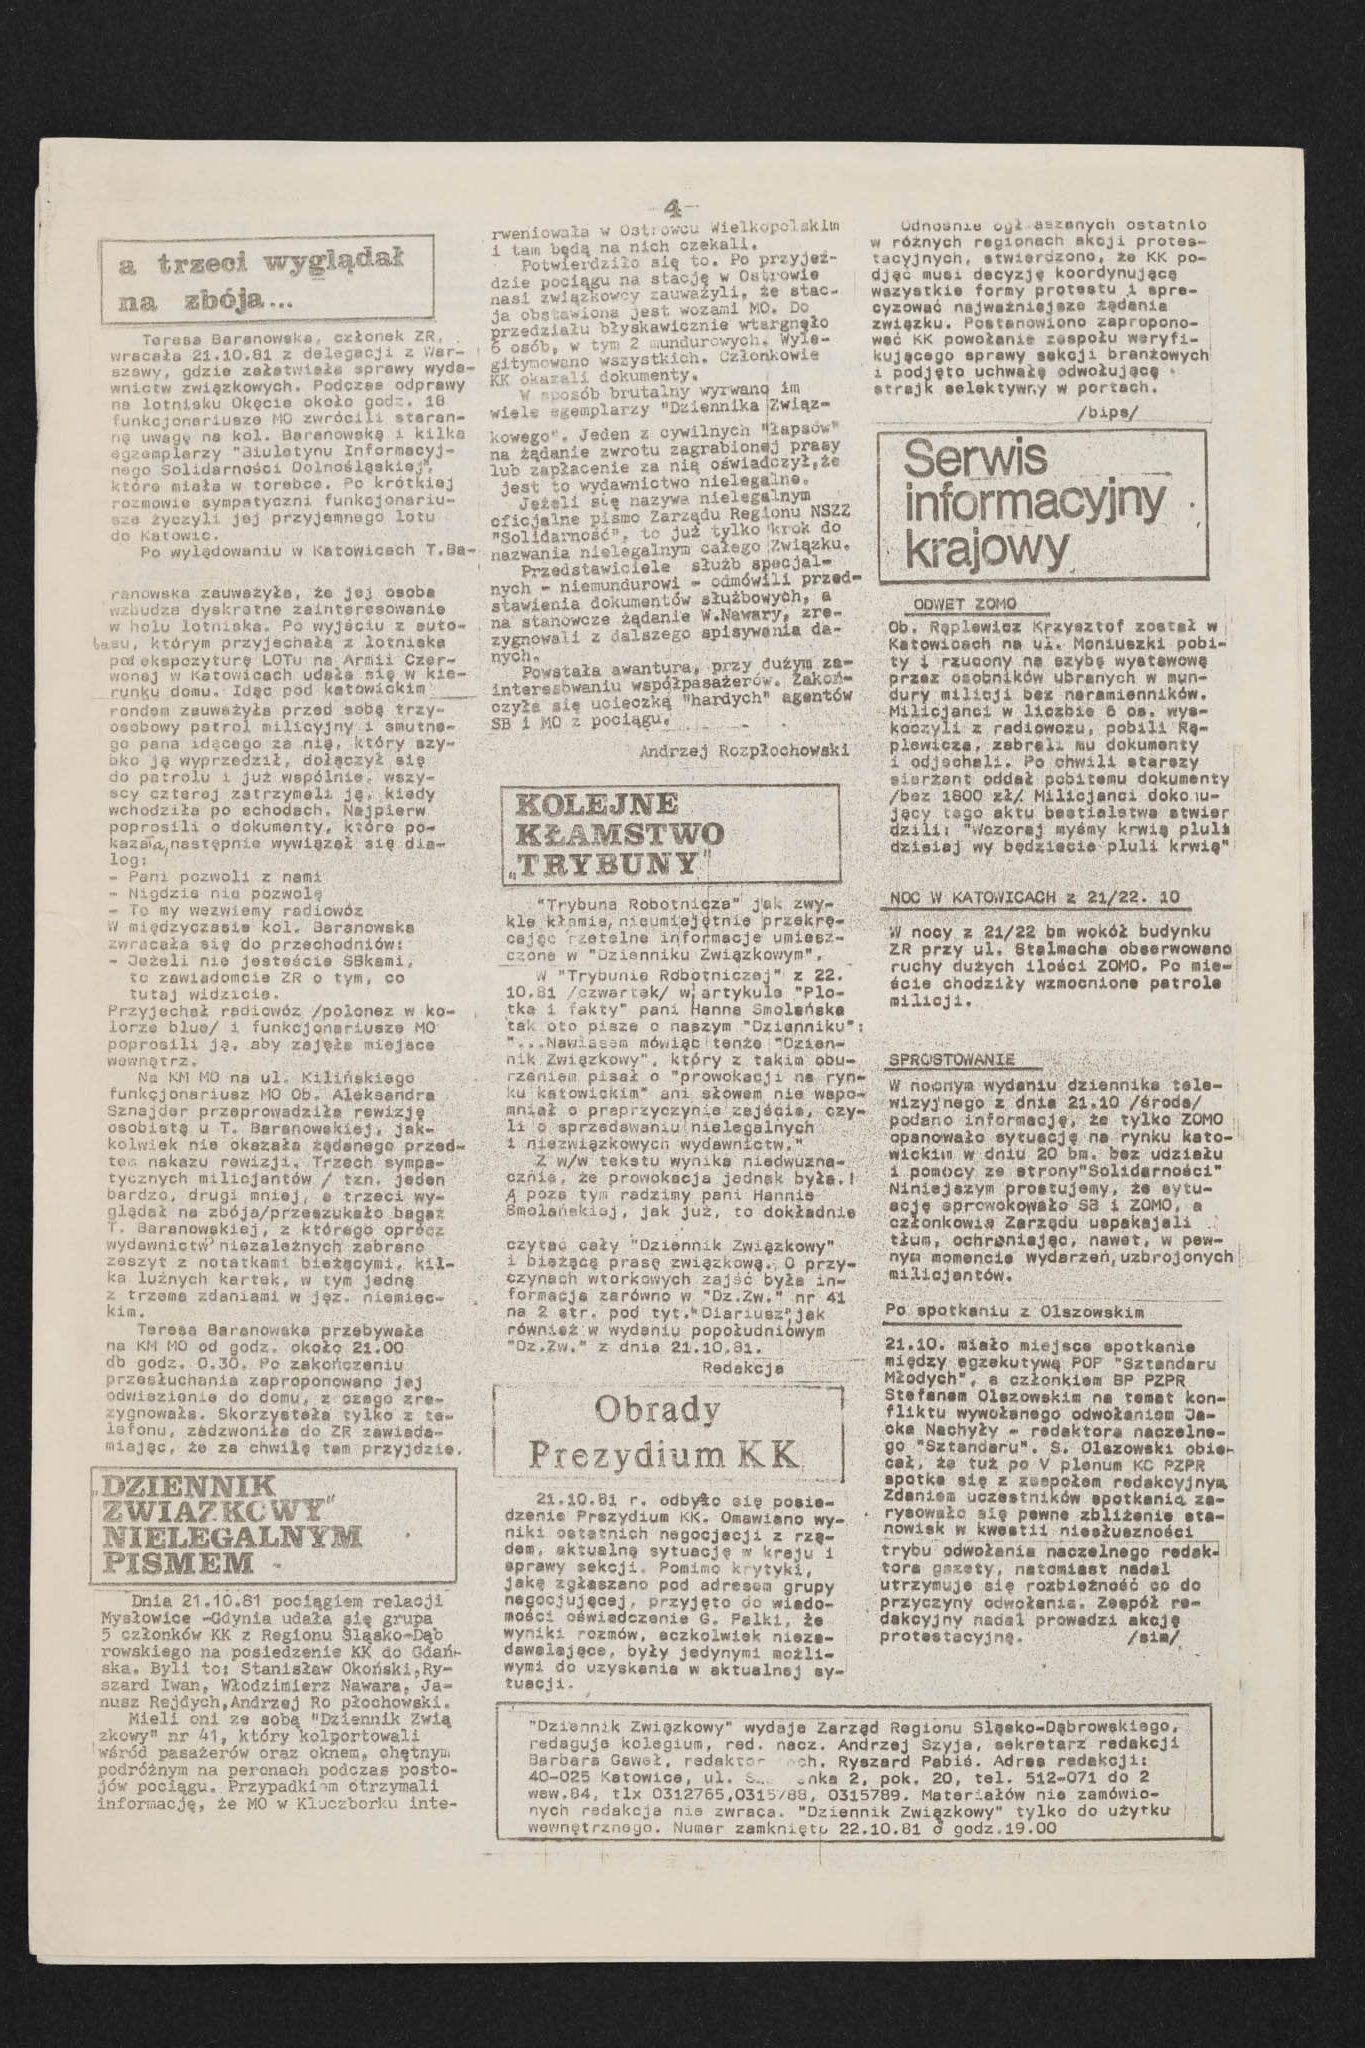 Dziennik związkowy nr 43 23.10.1981